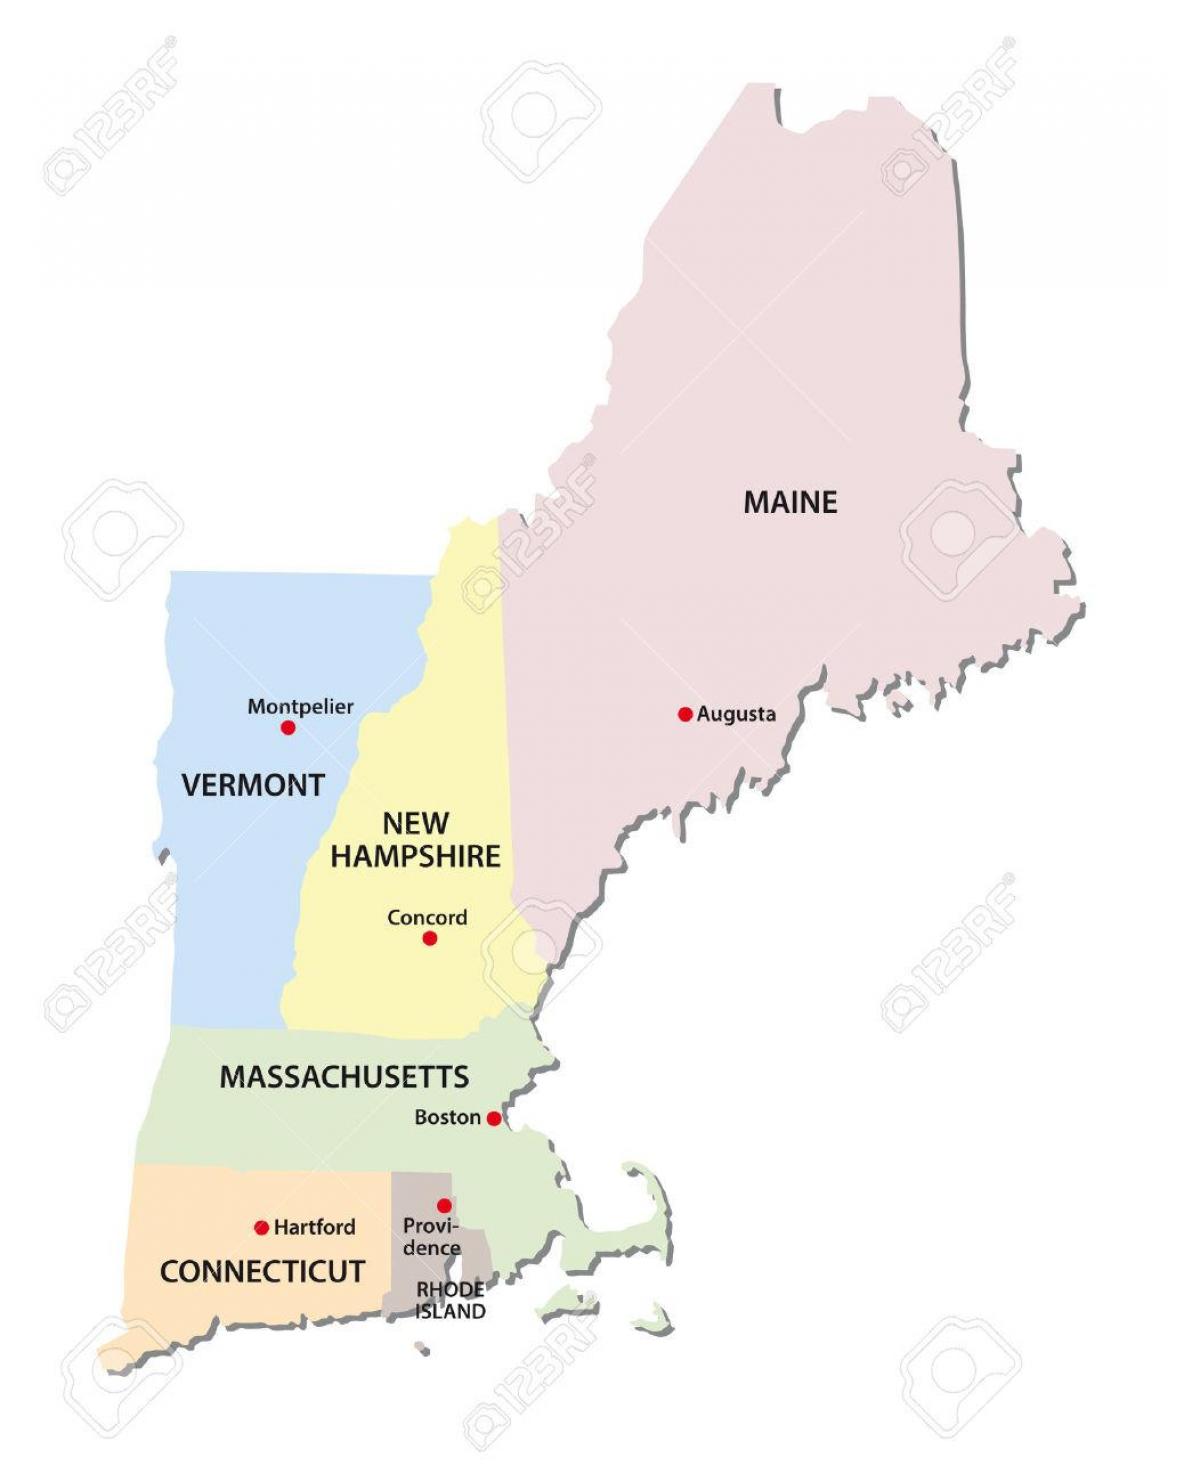 mapa dos estados da Nova Inglaterra